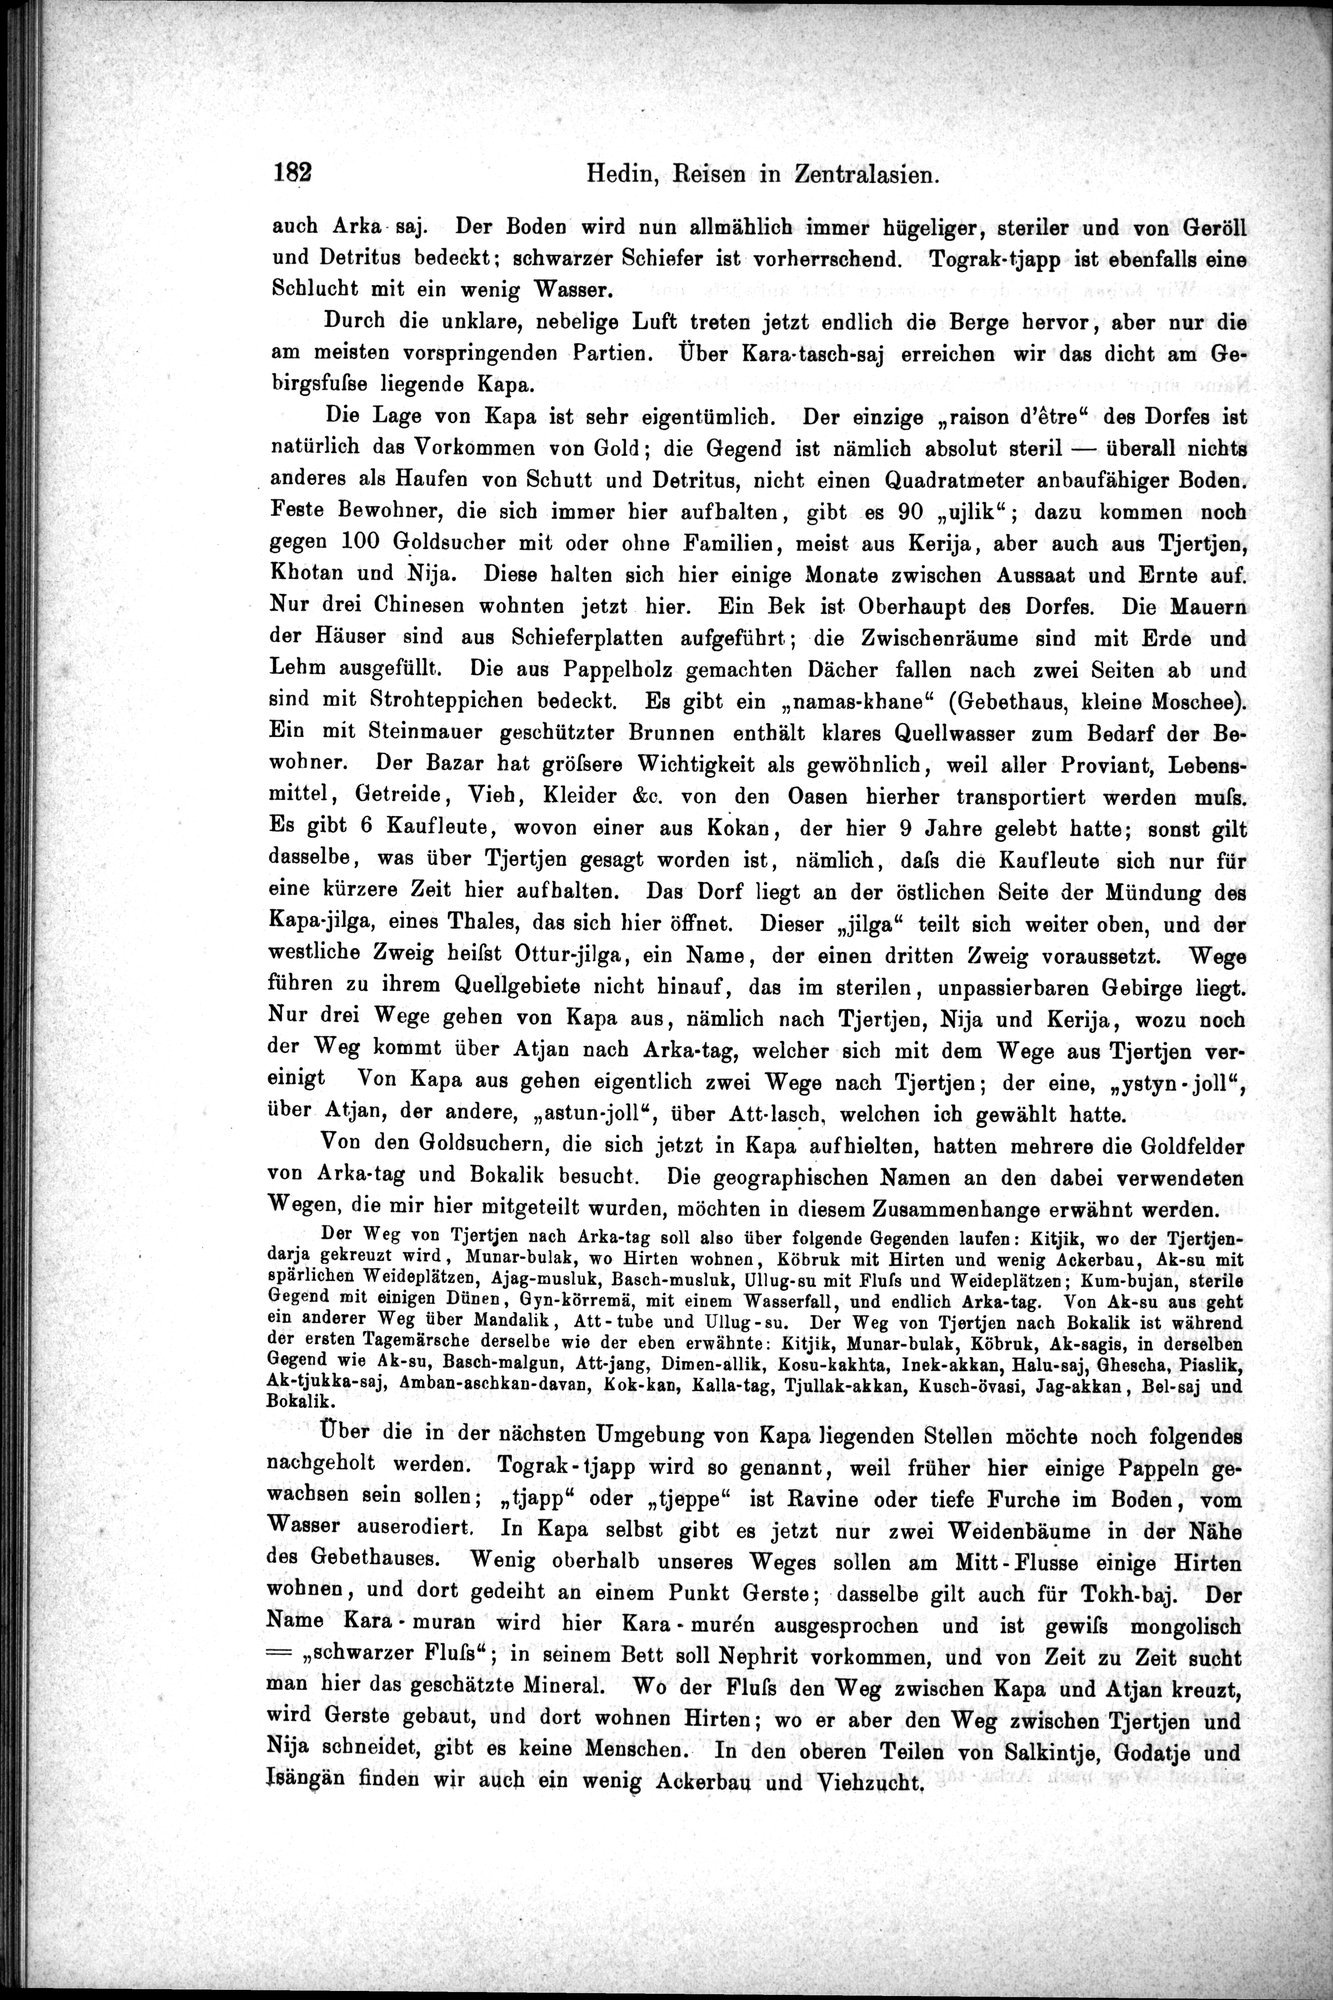 Die Geographische-Wissenschaftlichen Ergebnisse meiner Reisen in Zentralasien, 1894-1897 : vol.1 / Page 194 (Grayscale High Resolution Image)